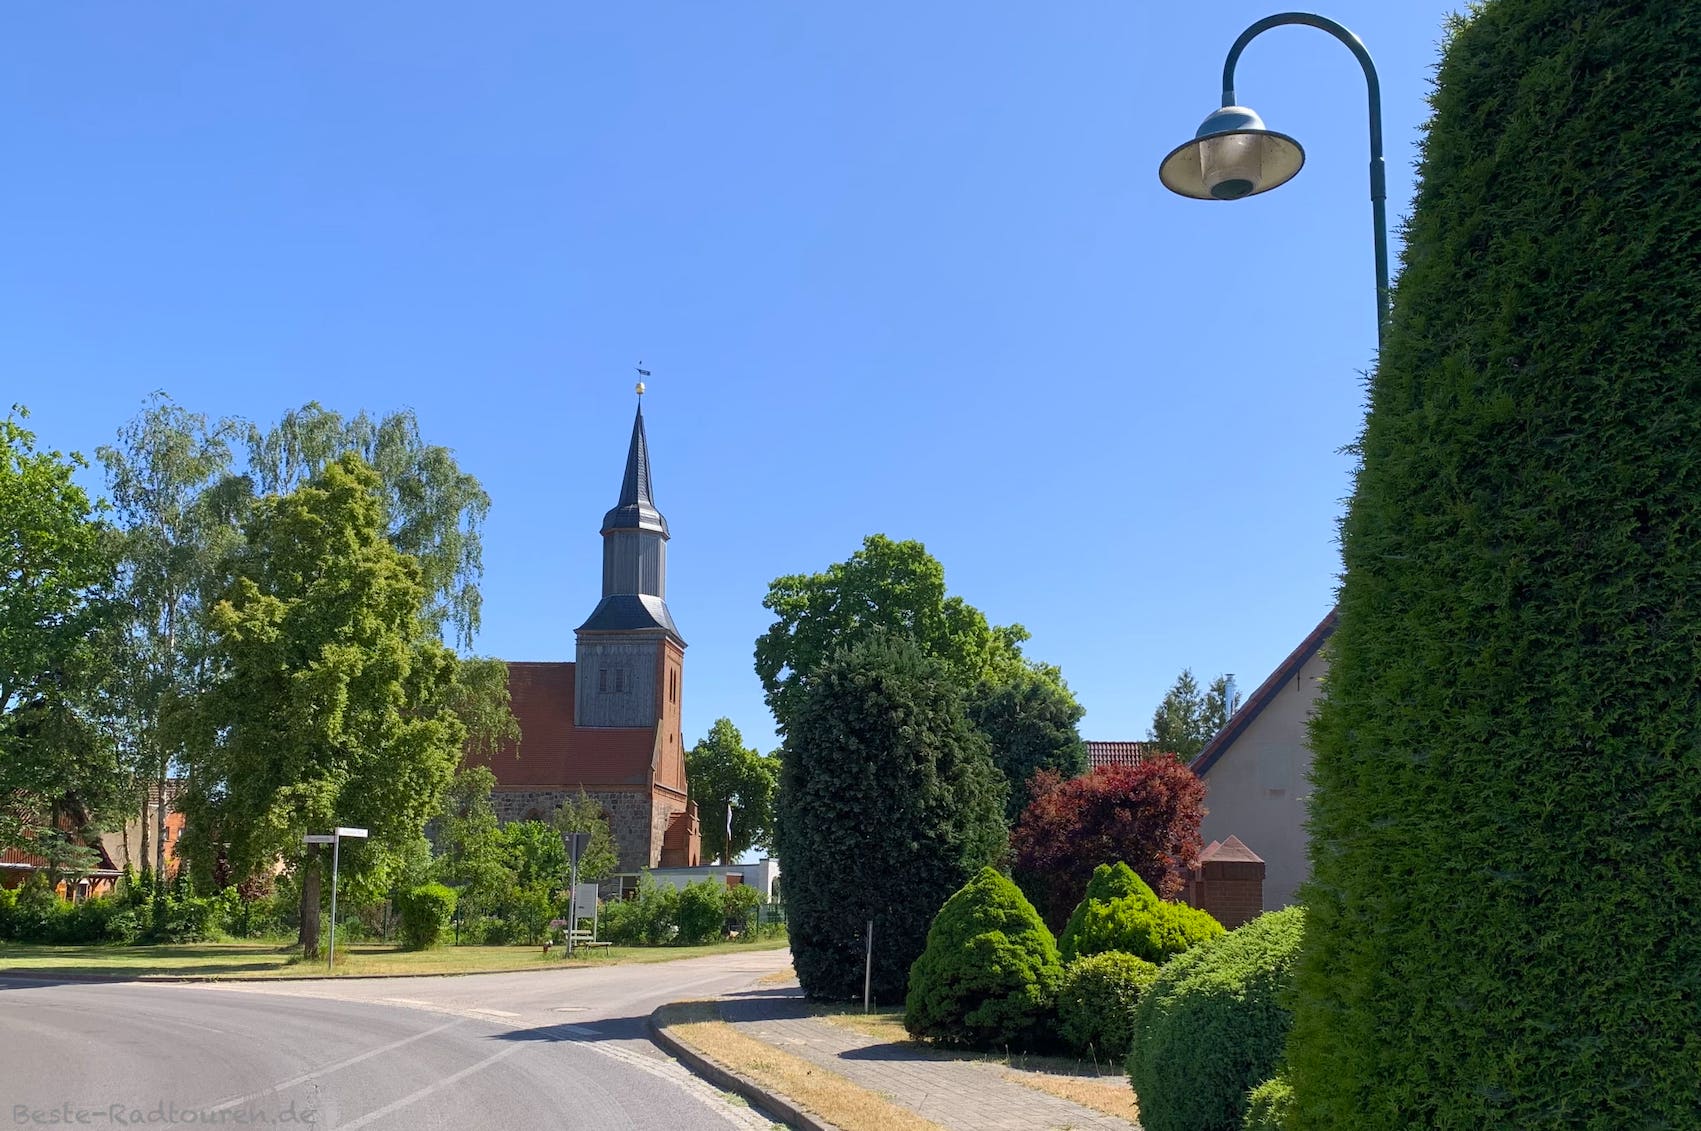 Foto vom UM-Radweg (Uckermärkische Radrundtour) aus: Dorfkirche Stendell (Schwedt)